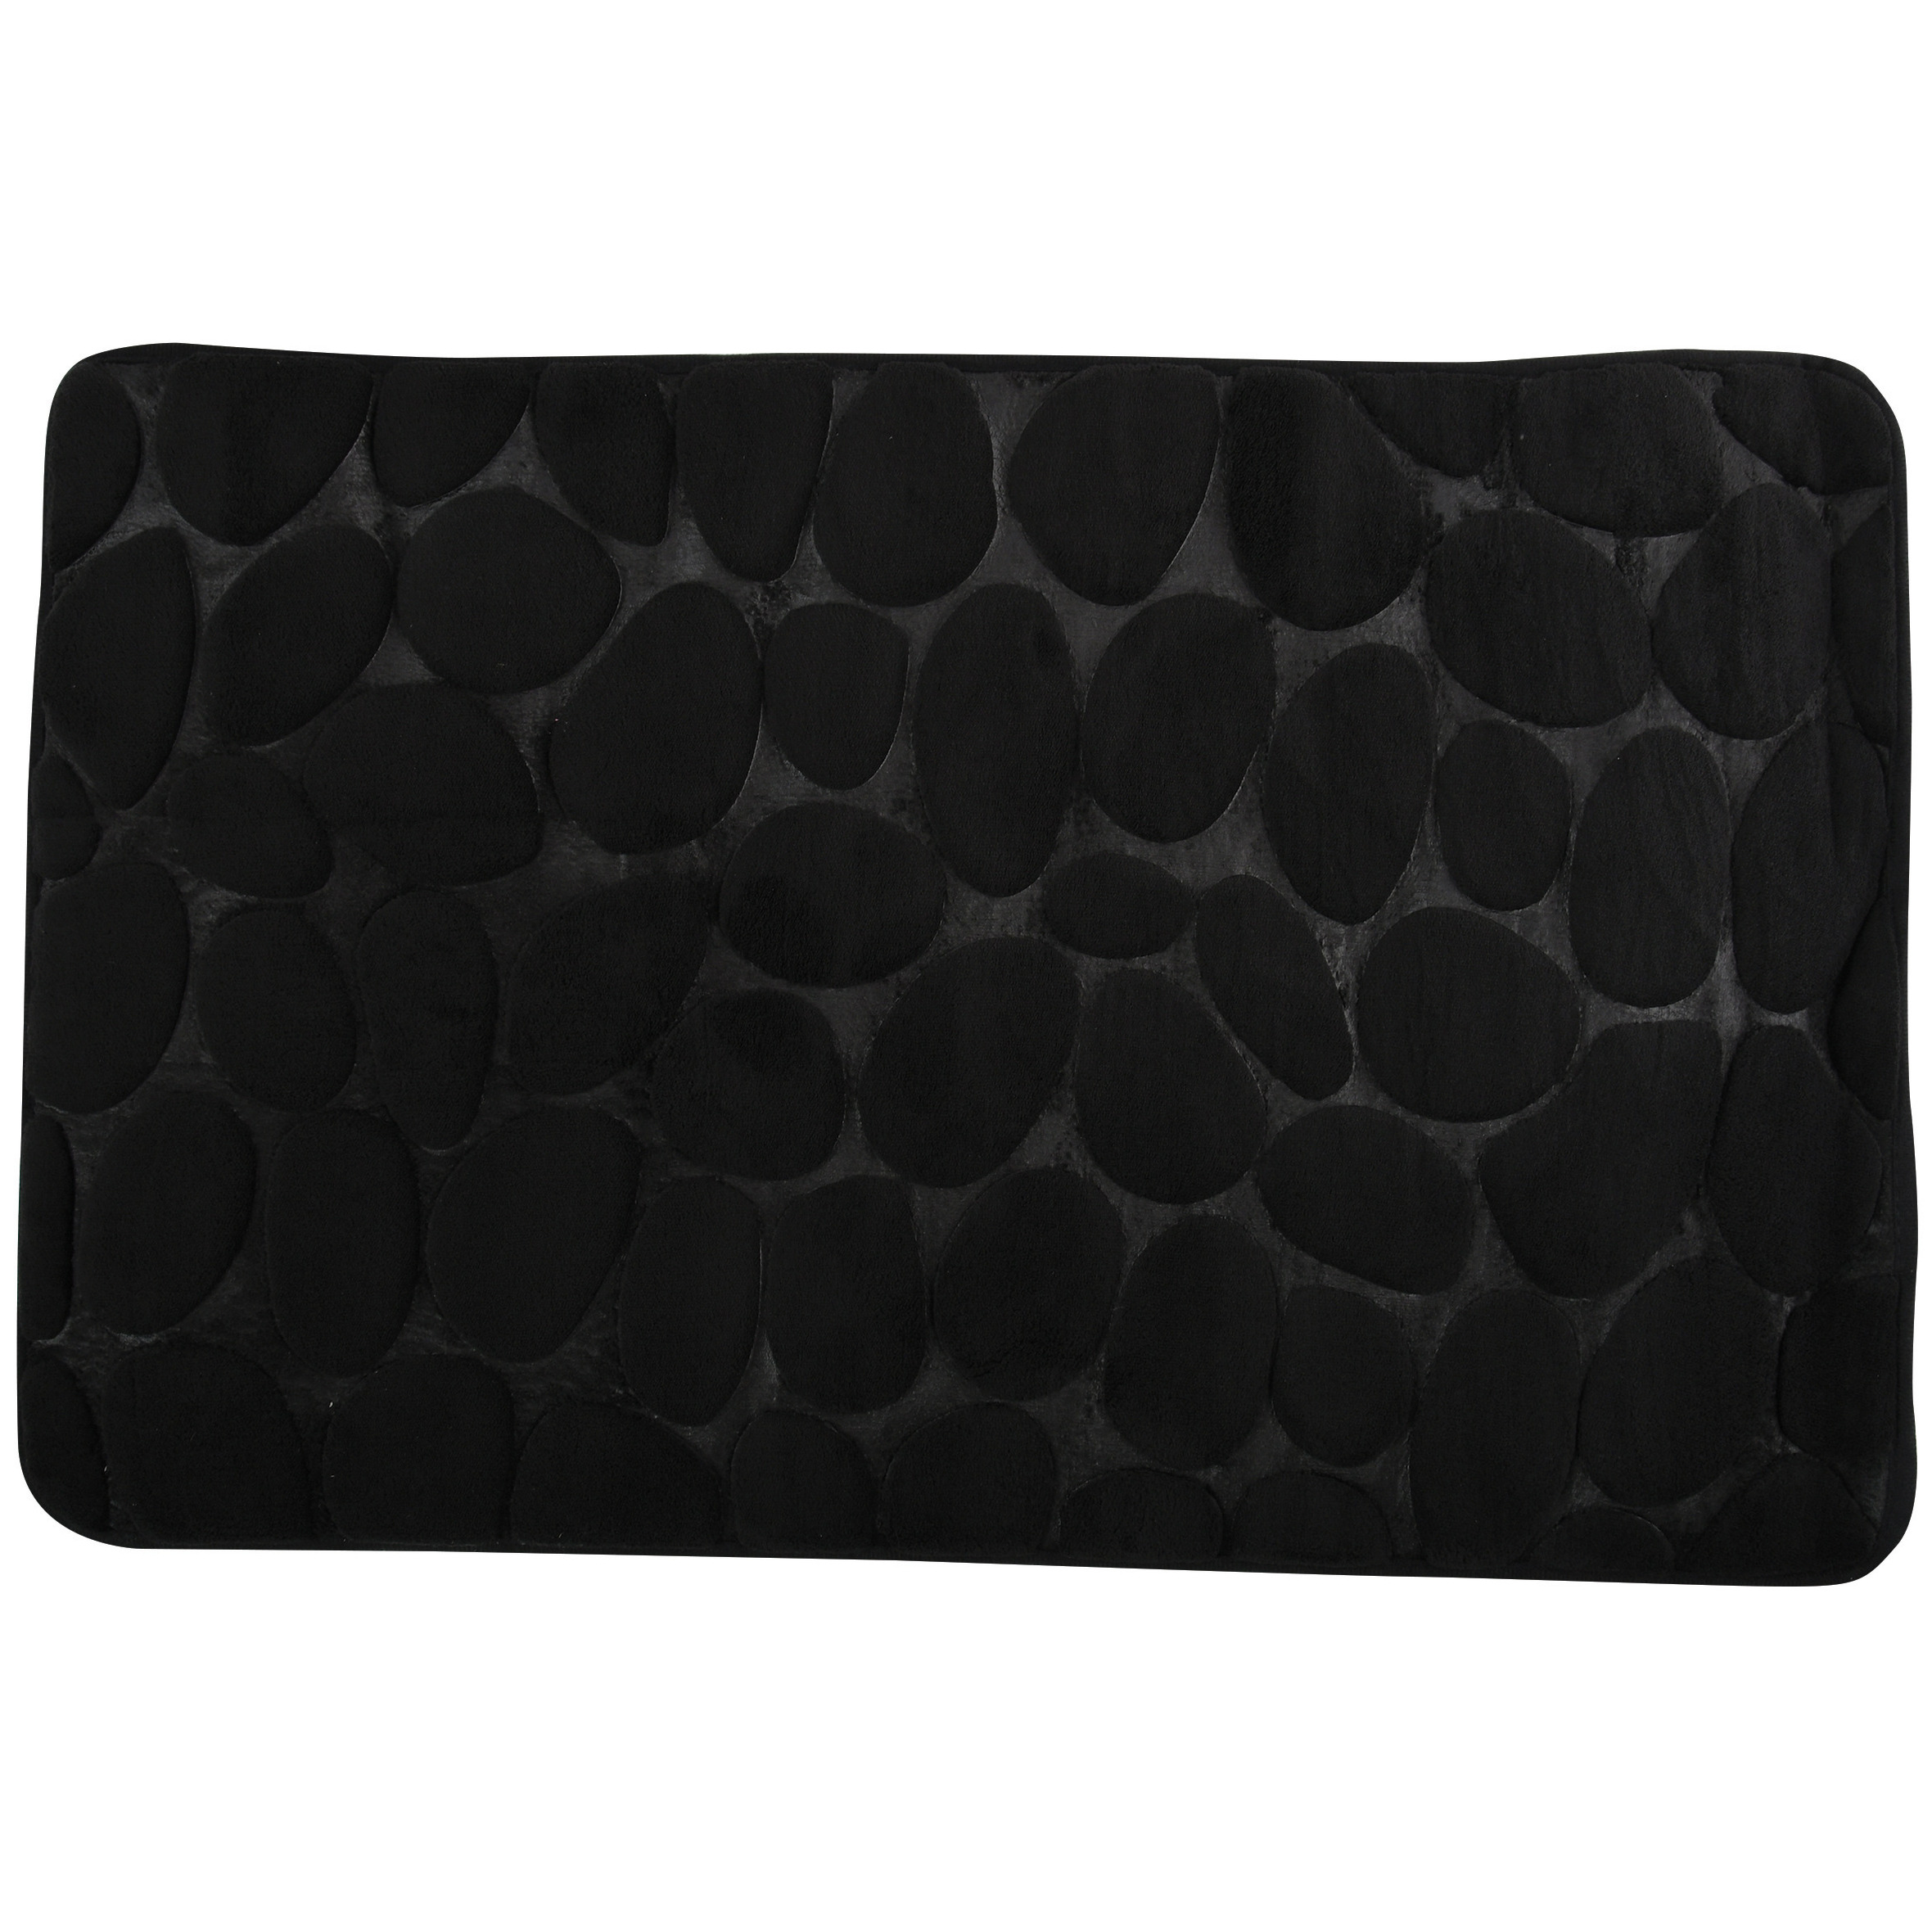 Badkamerkleedje-badmat tapijt kiezel motief vloermat zwart 50 x 80 cm laagpolig